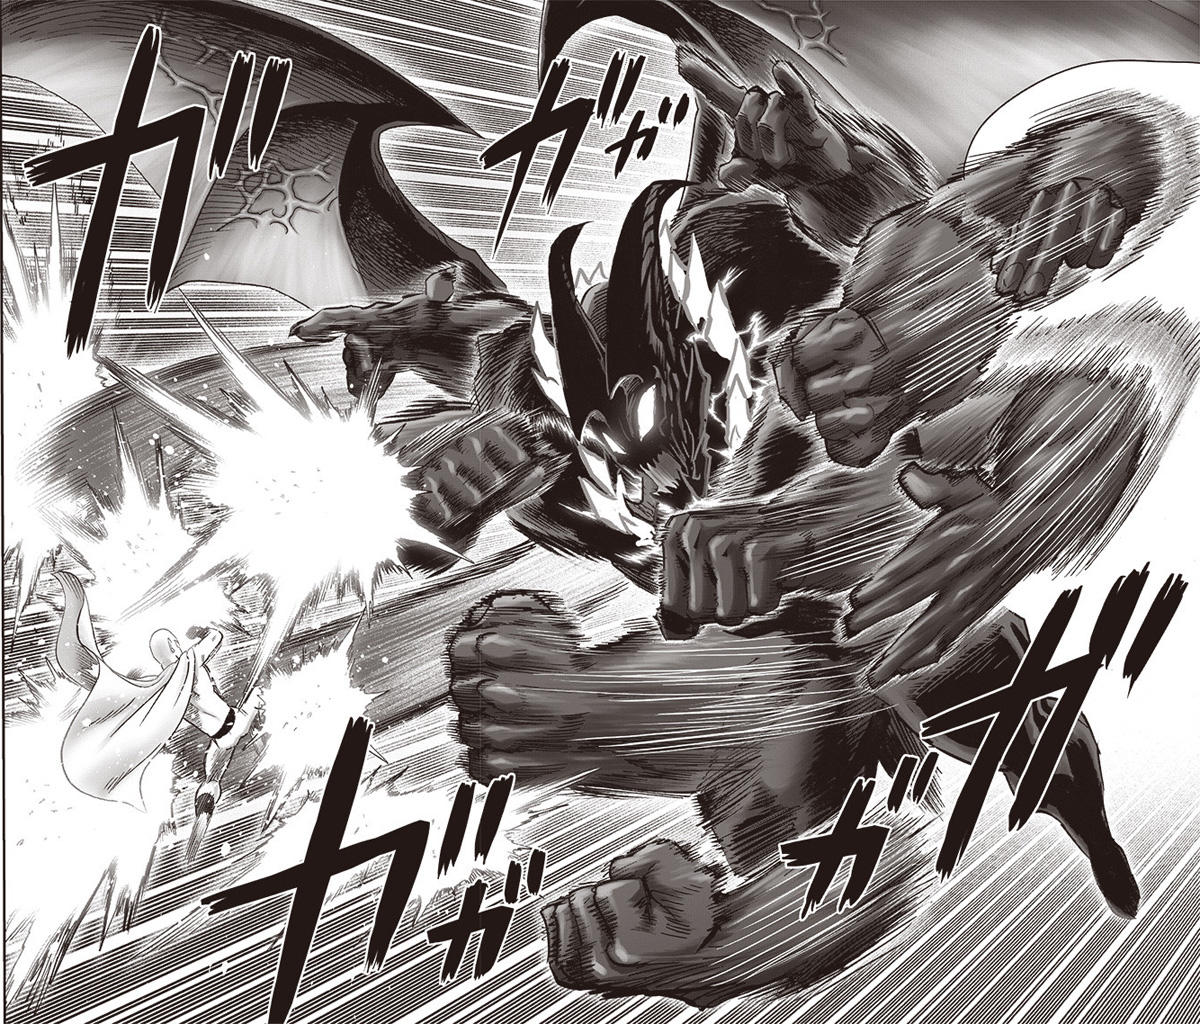 One-Punch Man: Garo ganha nova transformação divina no mangá